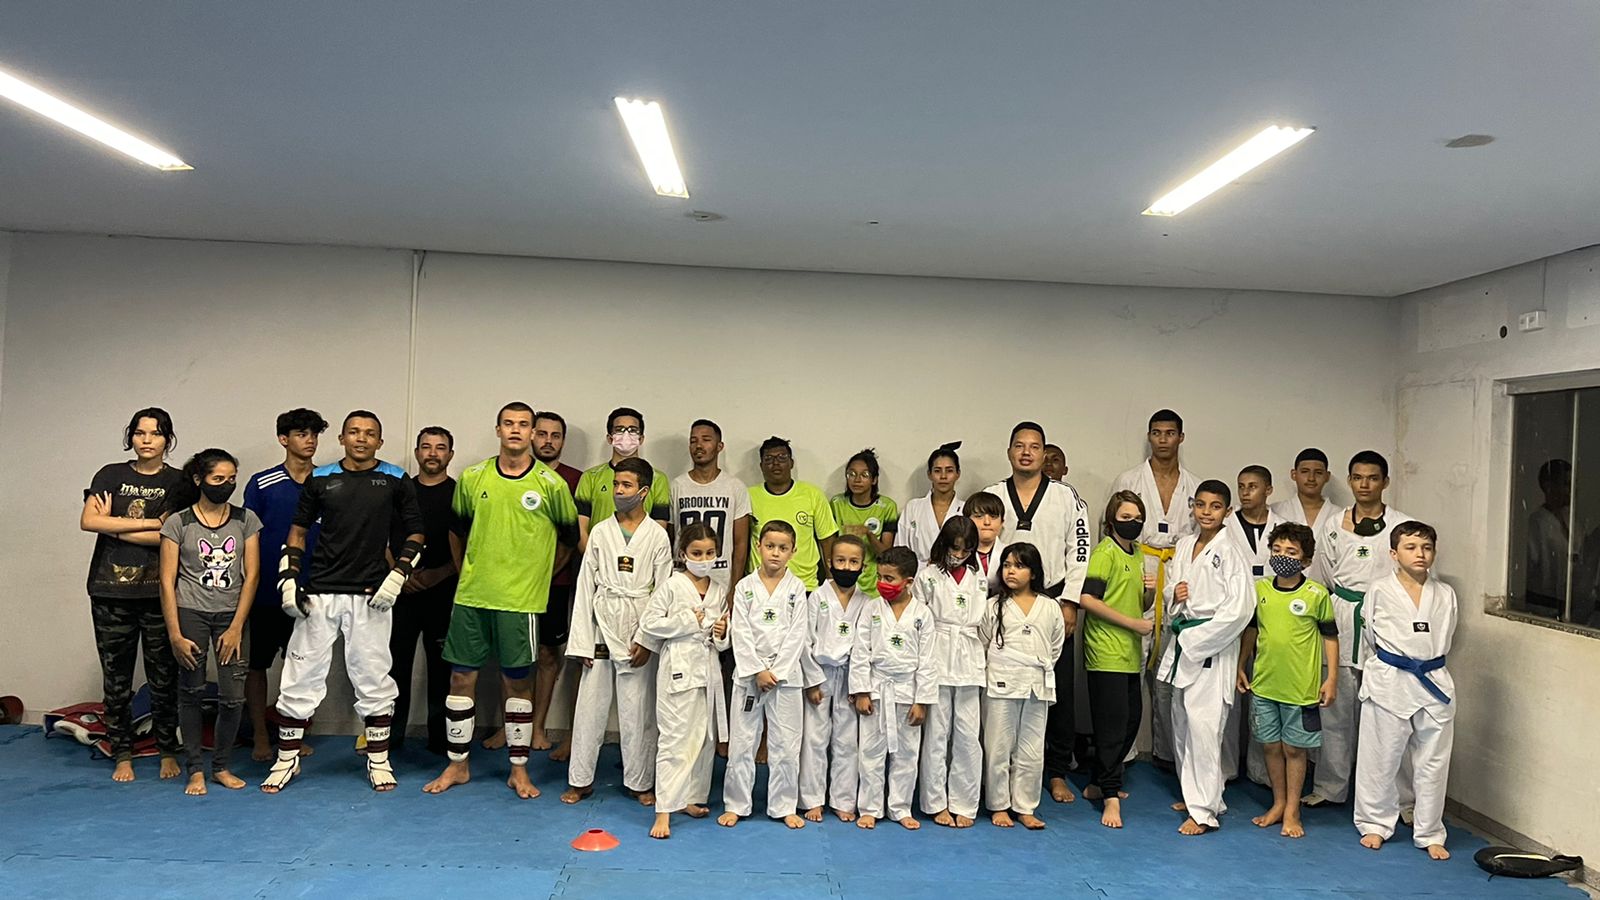 20 atletas do projeto Taekwondo irão representar Rio Verde no Campeonato Brasileiro de Taekwondo